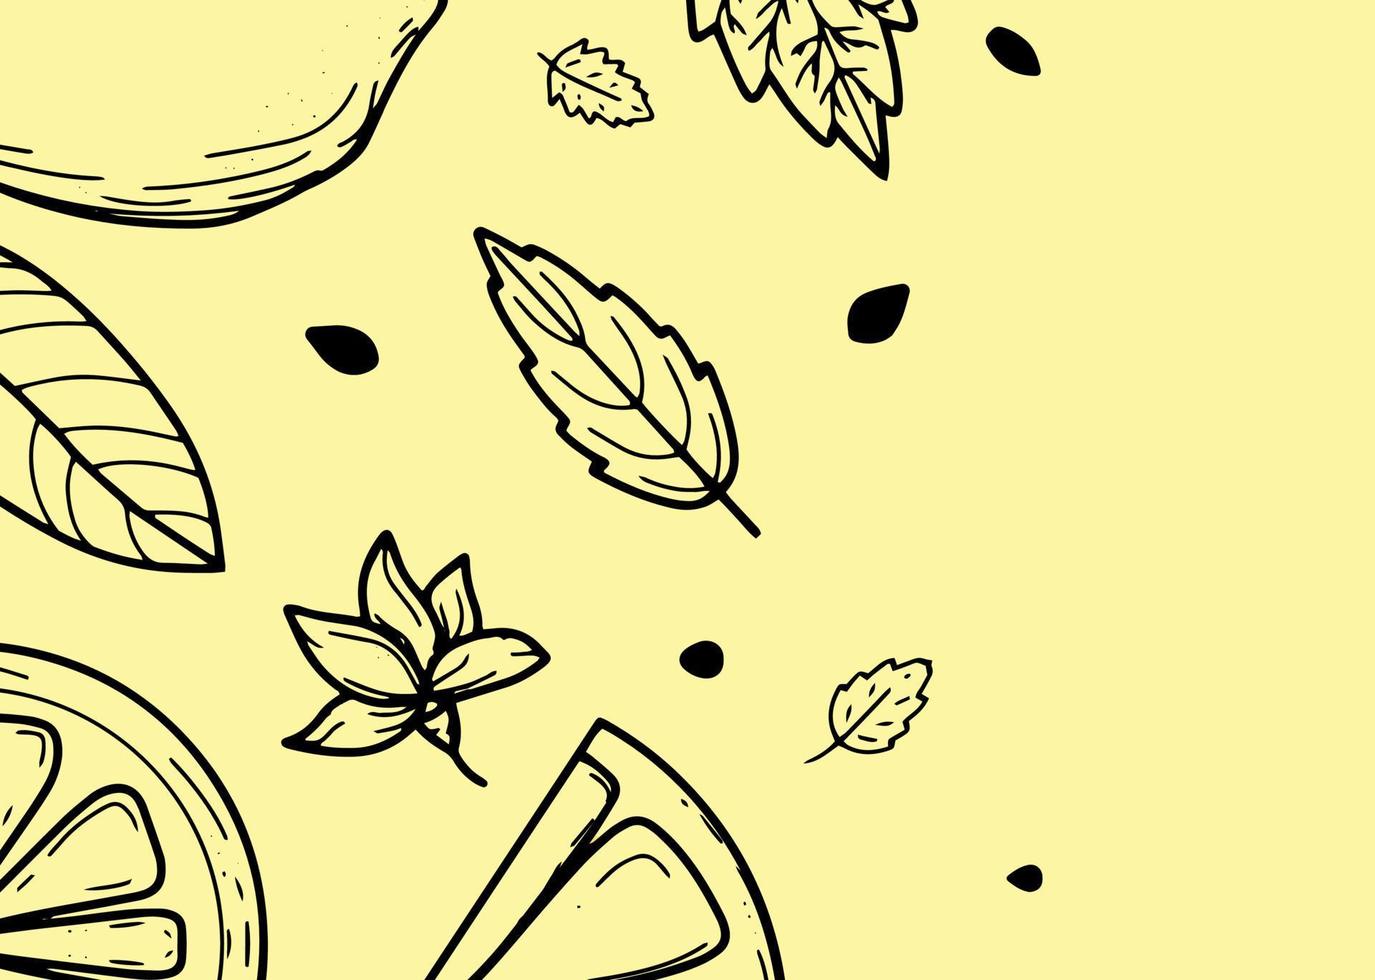 hermoso fondo con limones, flores, licencia. ilustración vectorial dibujada a mano de frutas. banner en el estilo de grabado. diseño botánico y cítrico vintage. para afiches, impresiones, papel tapiz, portadas vector